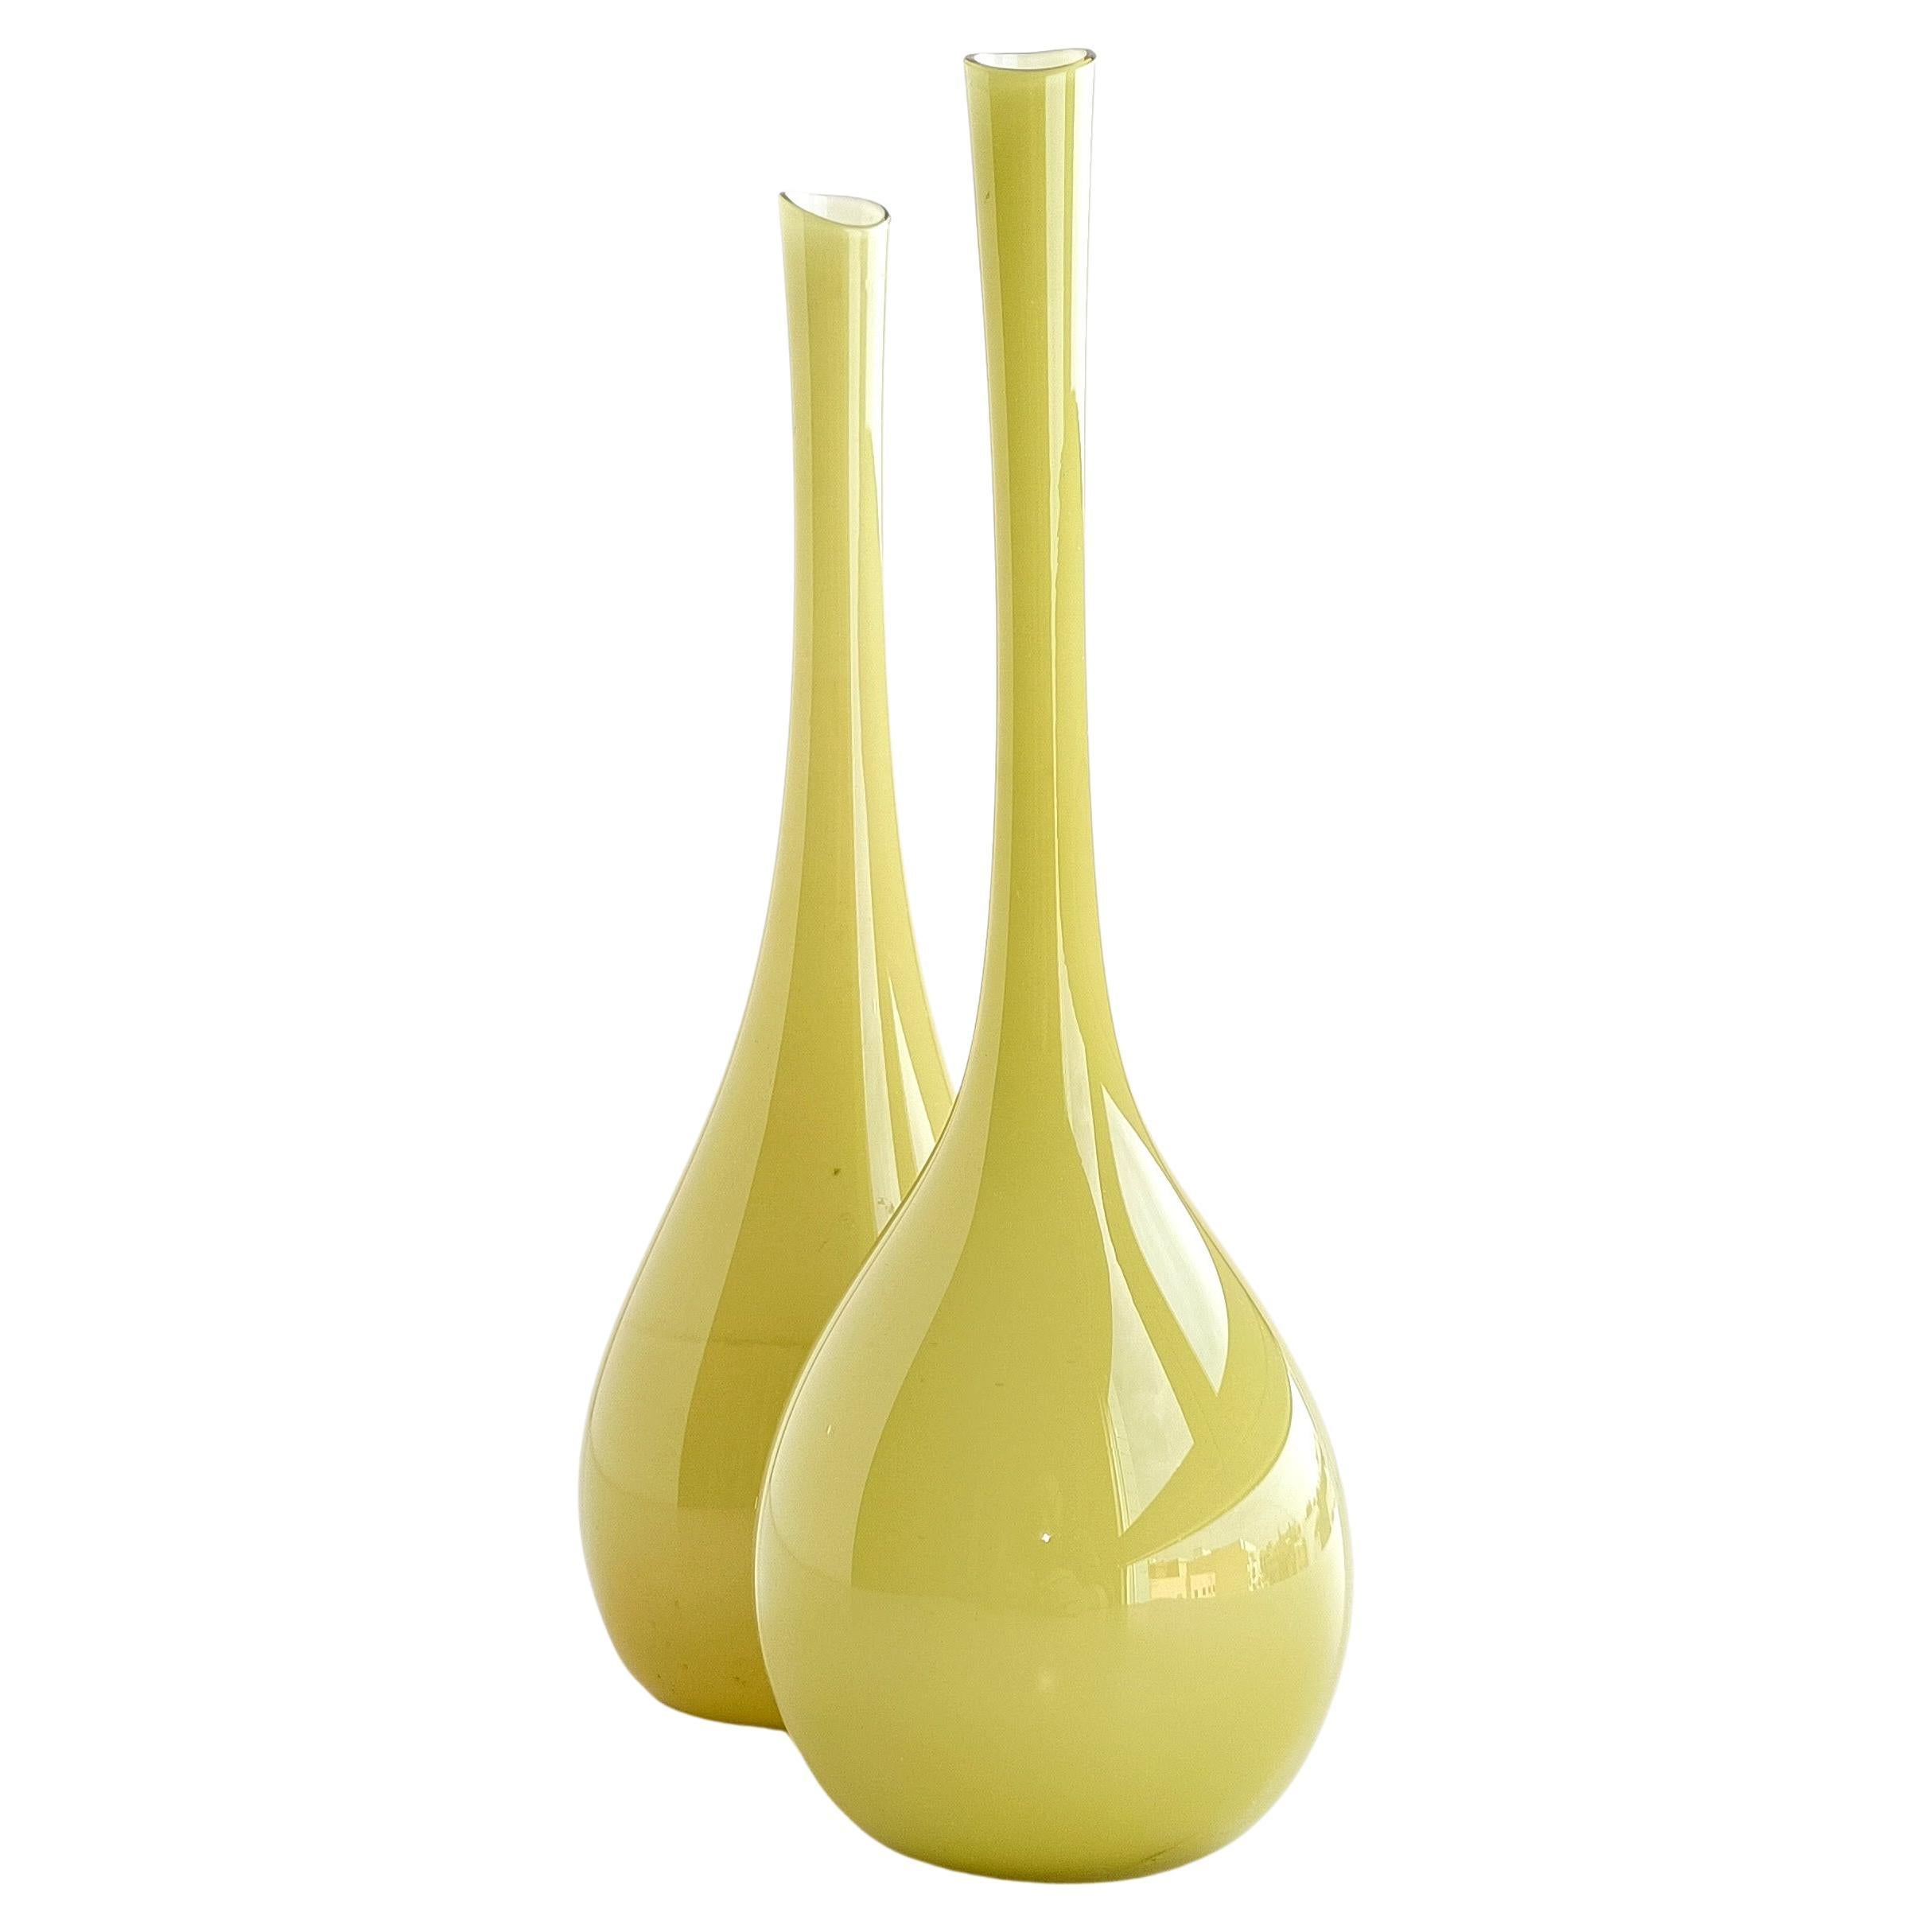 Paire de vases en forme de gobelet avec une fine tige, conçus par Gunnar Ander pour Lindshamar Glassbruk. 

Elles se caractérisent par une couche extérieure de verre de teinte pistache pâle avec une enveloppe blanche extra fine. Très légères et